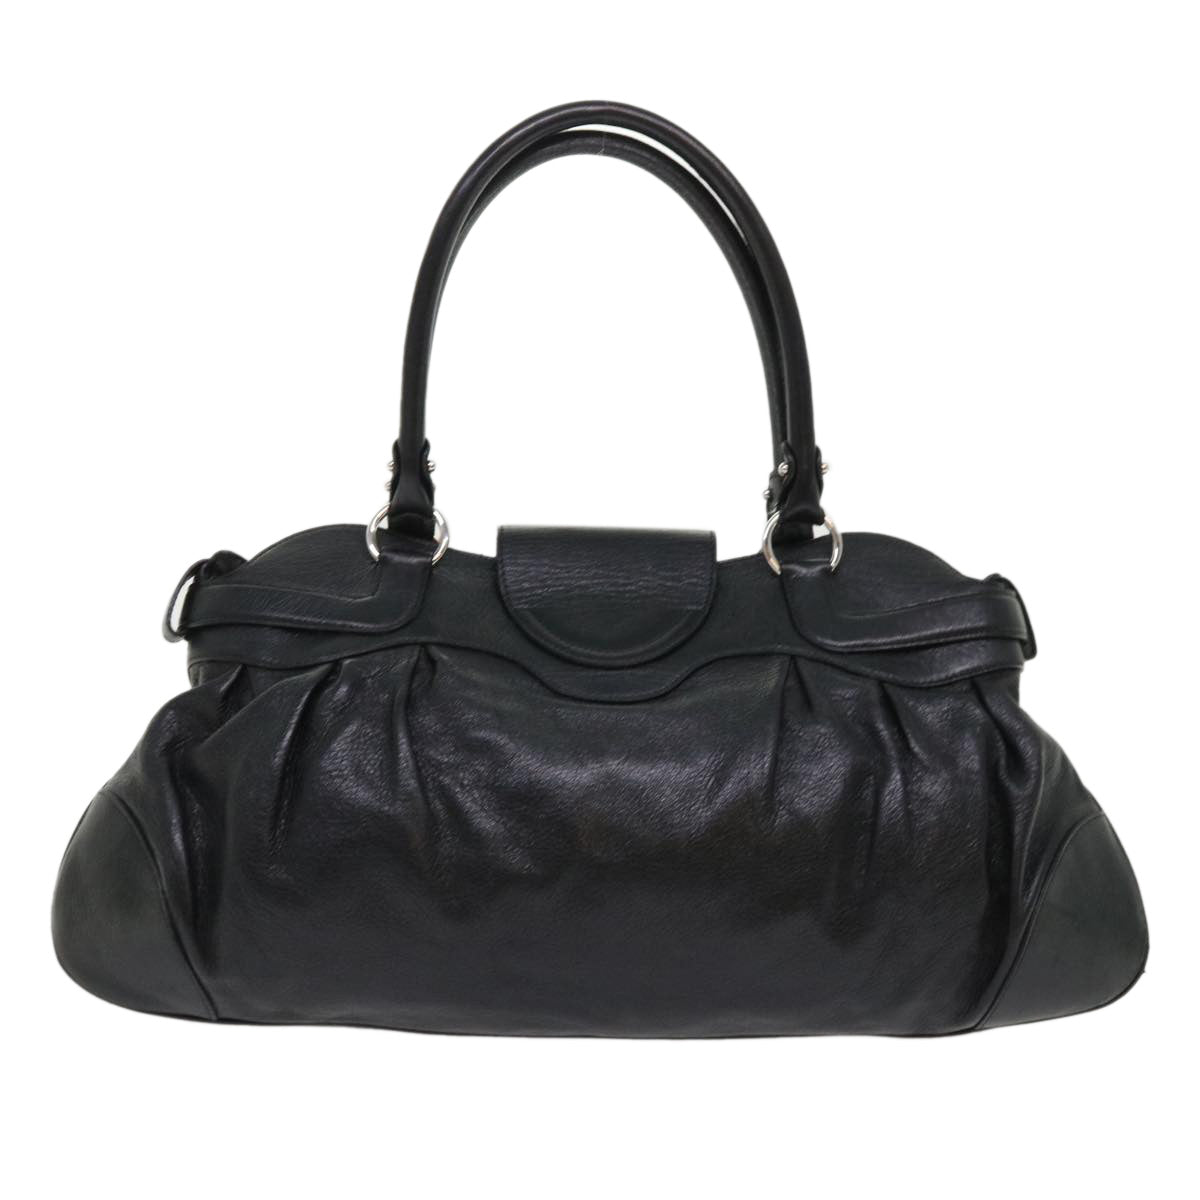 Salvatore Ferragamo Gancini Marissa Shoulder Bag Leather Black Auth 48040 - 0